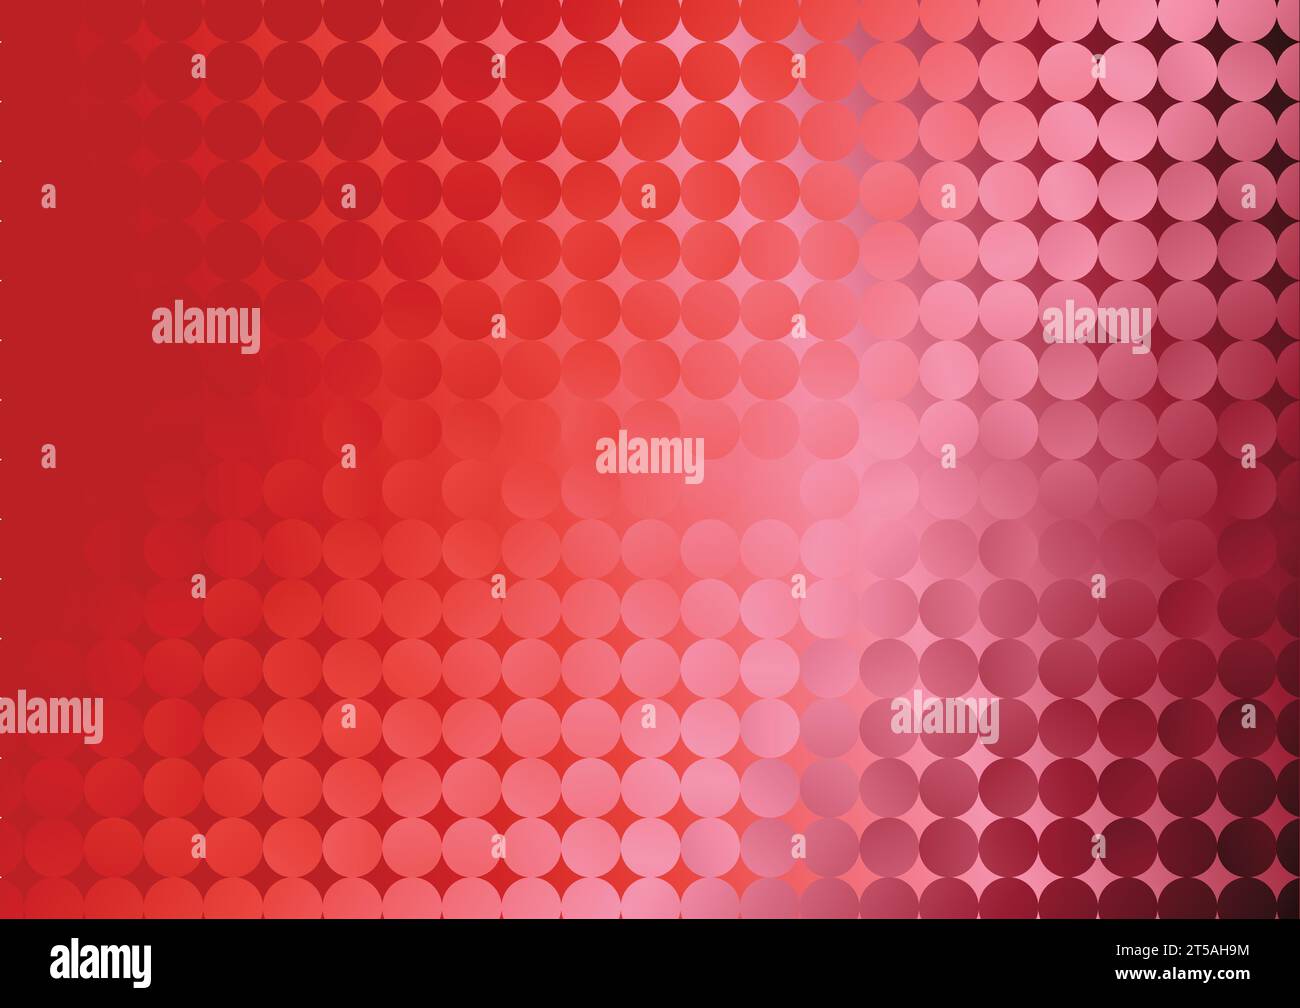 Freier Vektor abstraktes Hintergrunddesign mit rotem Farbverlauf Stock Vektor